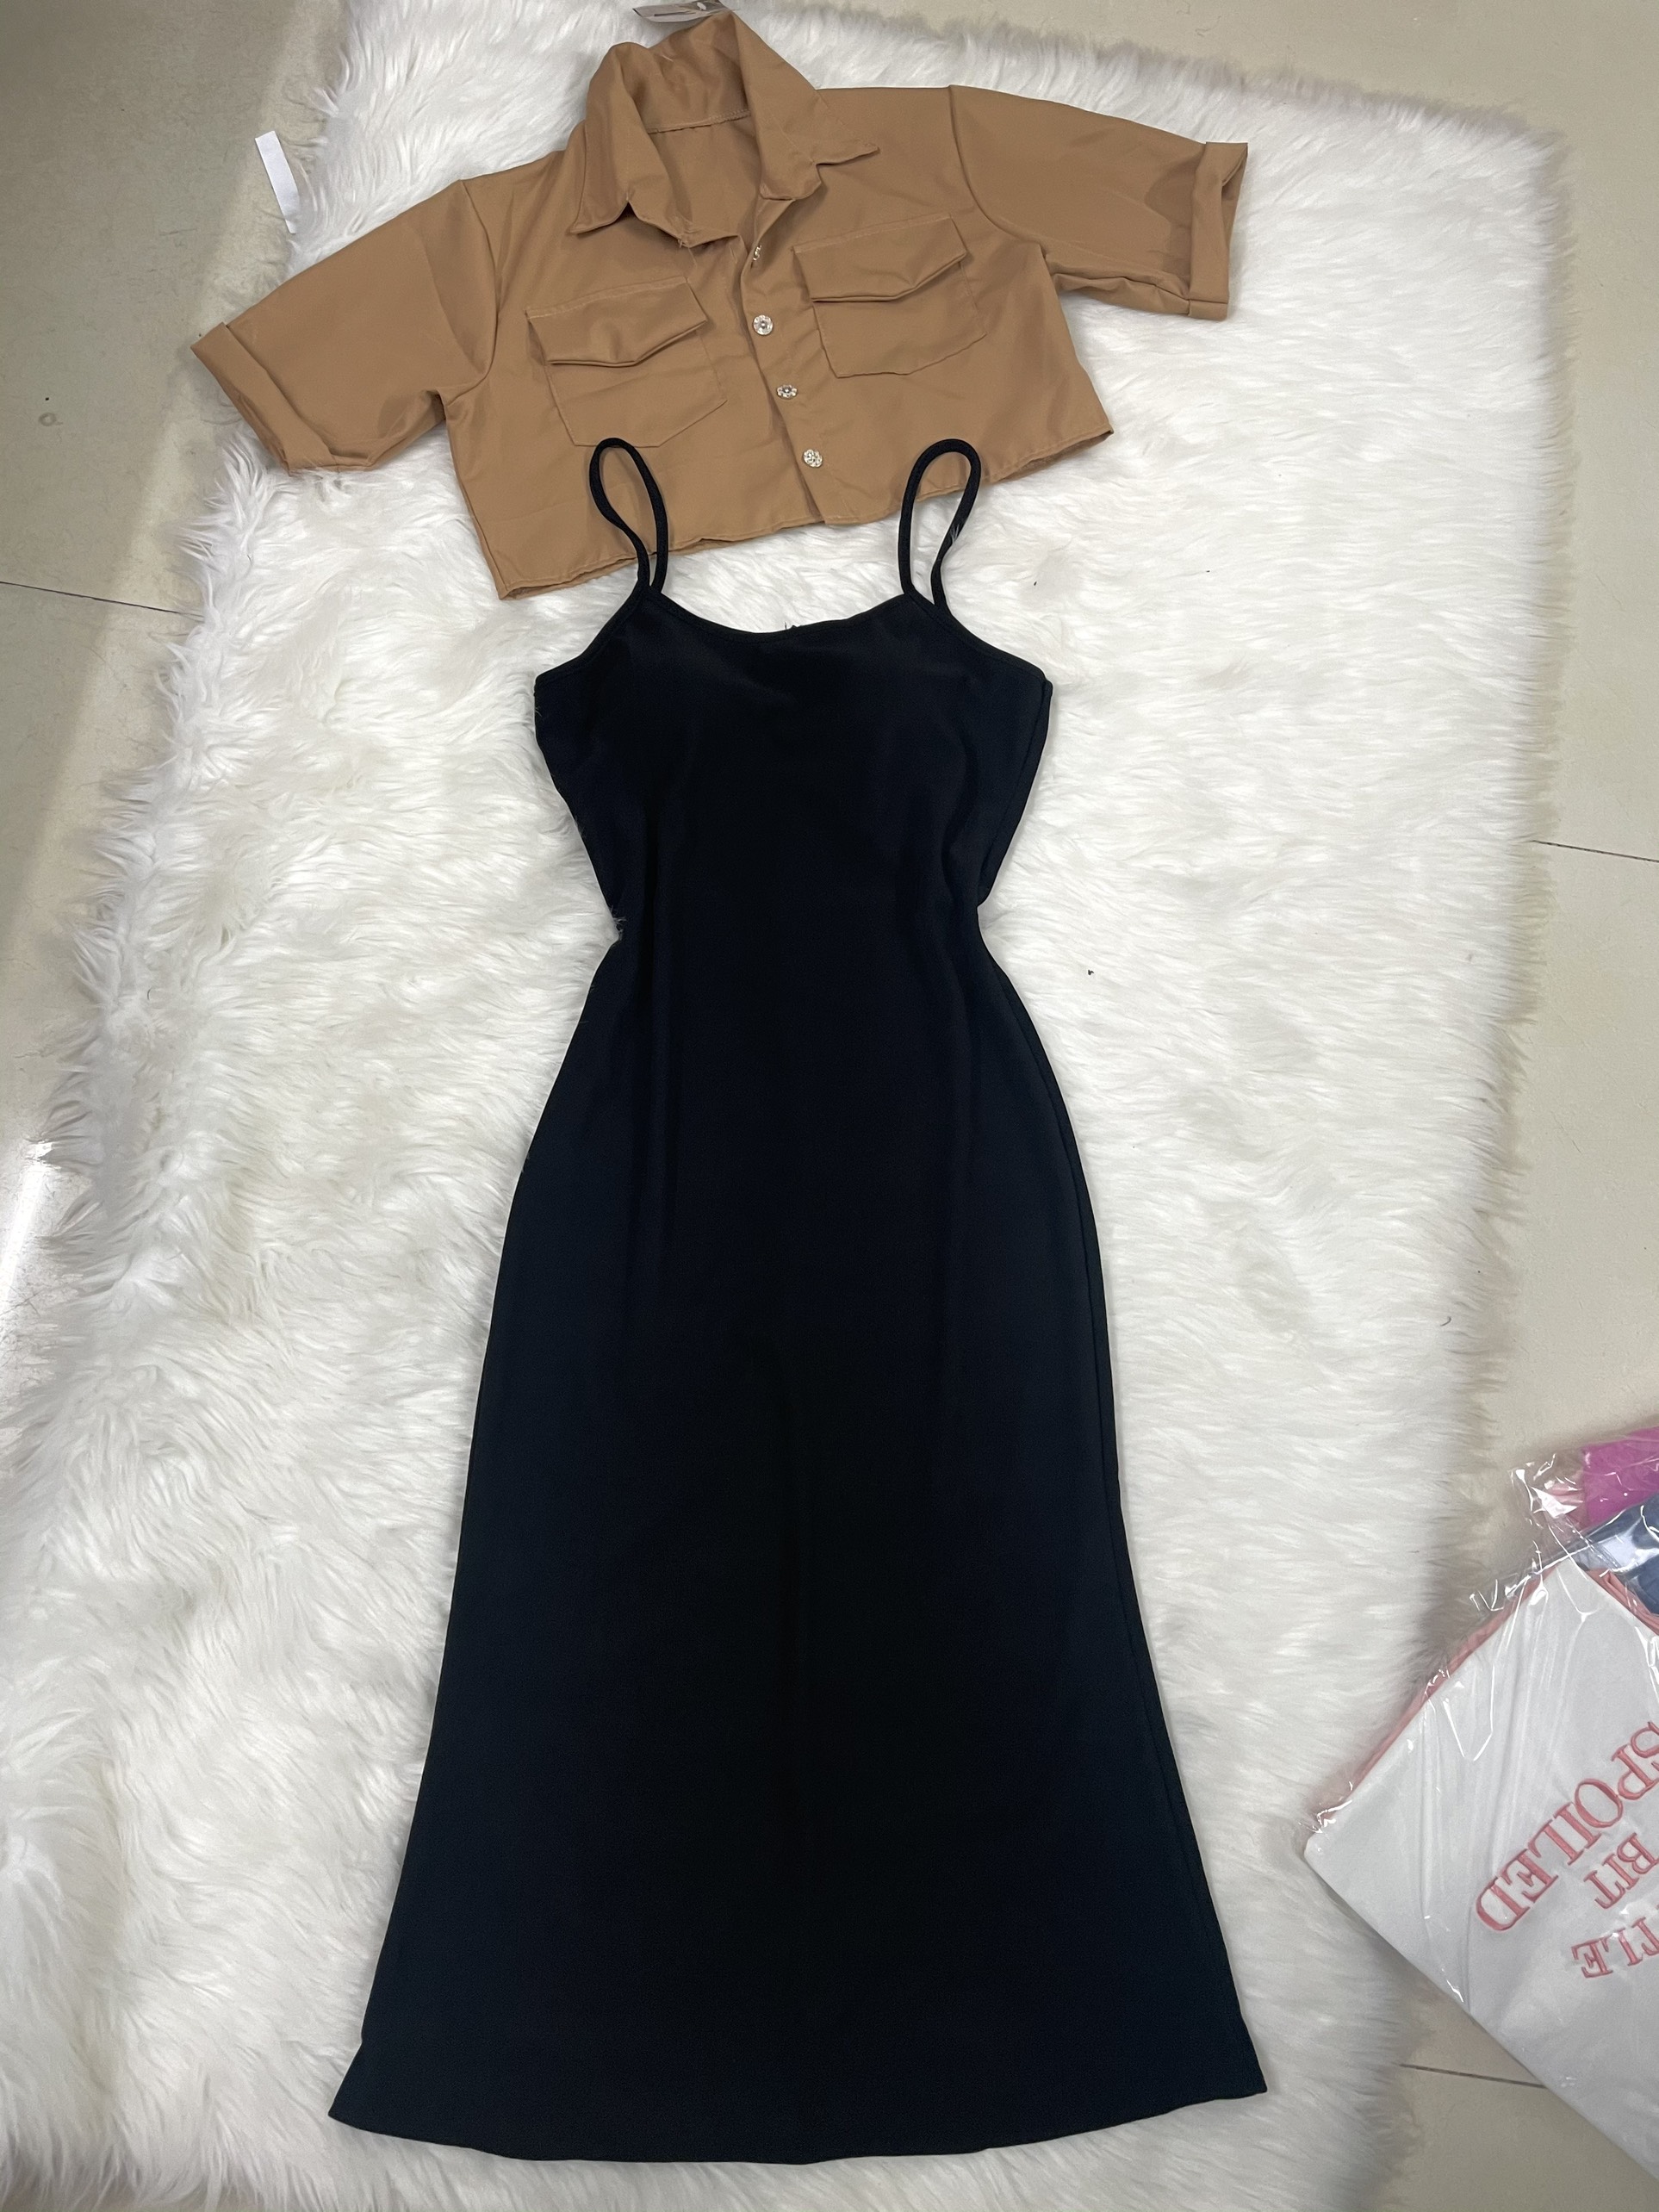 Đầm body thun gân kèm áo khoác kaki Ánh Dương Clothing M204, set váy body nữ và áo khoác